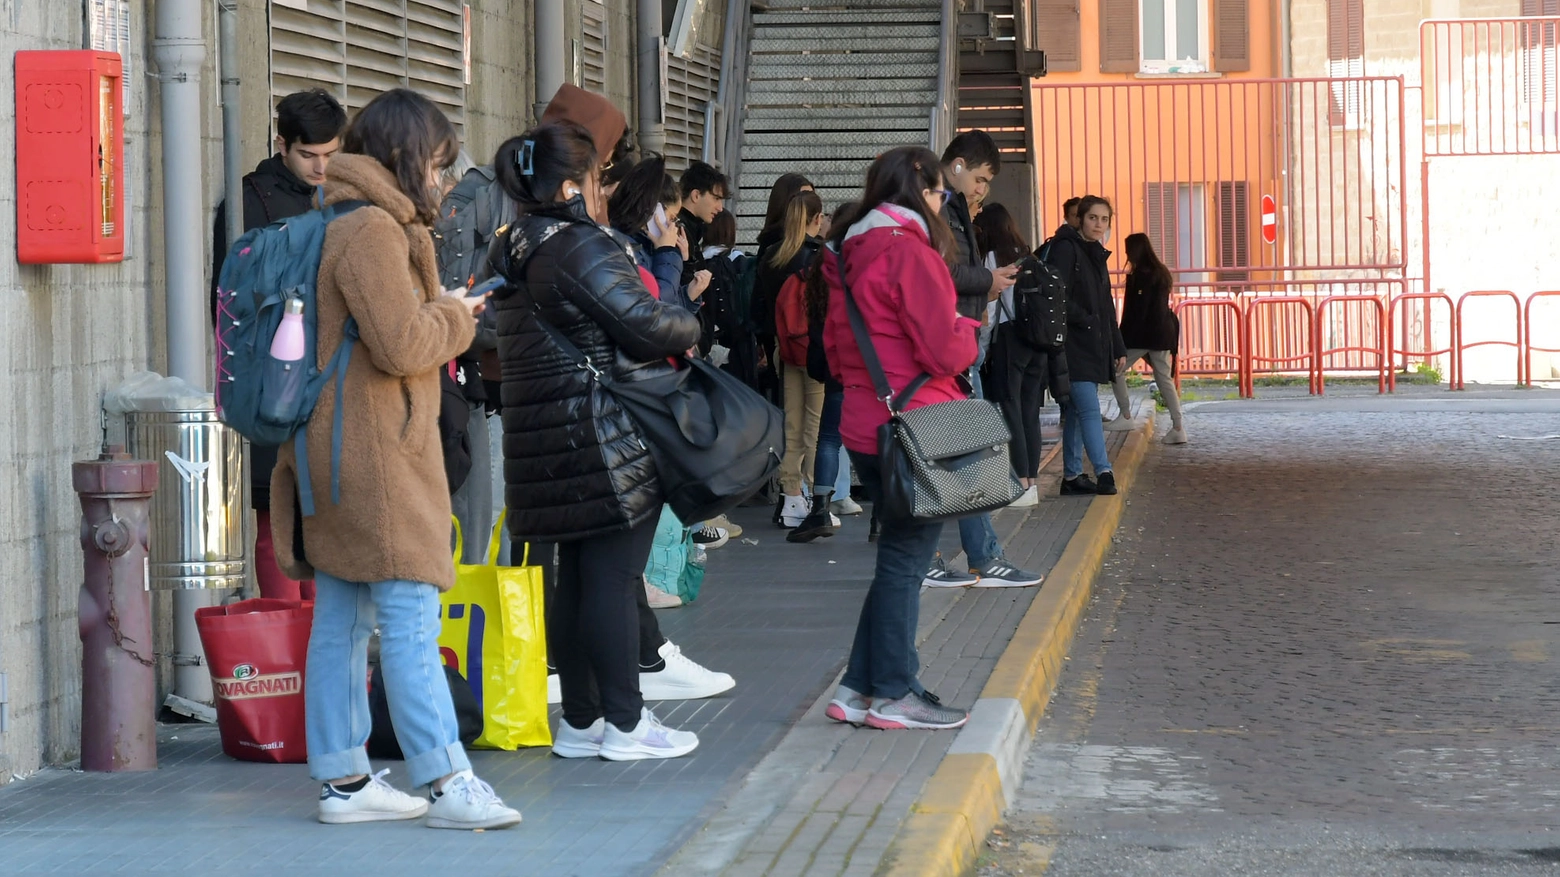 Studenti in attesa dell'autobus (Archivio)